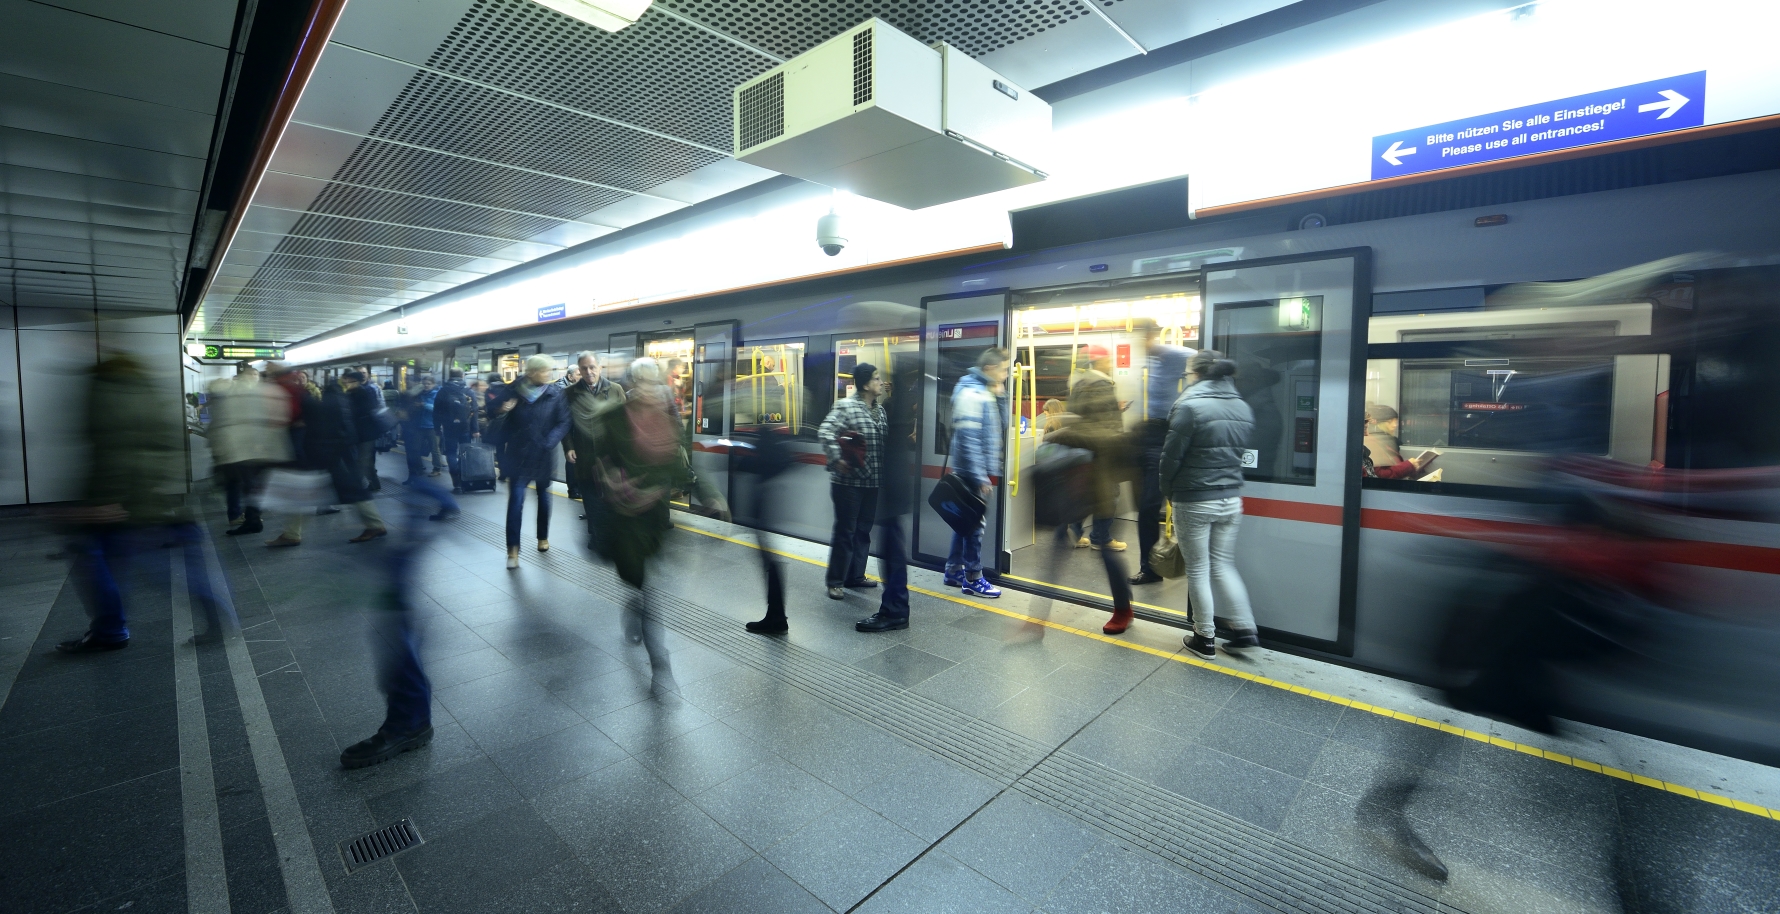 Viele Tausend Fahrgäste nutzen täglich die Wiener Linien, in diesem Bild die U-Bahn der Station Stephansplatz.